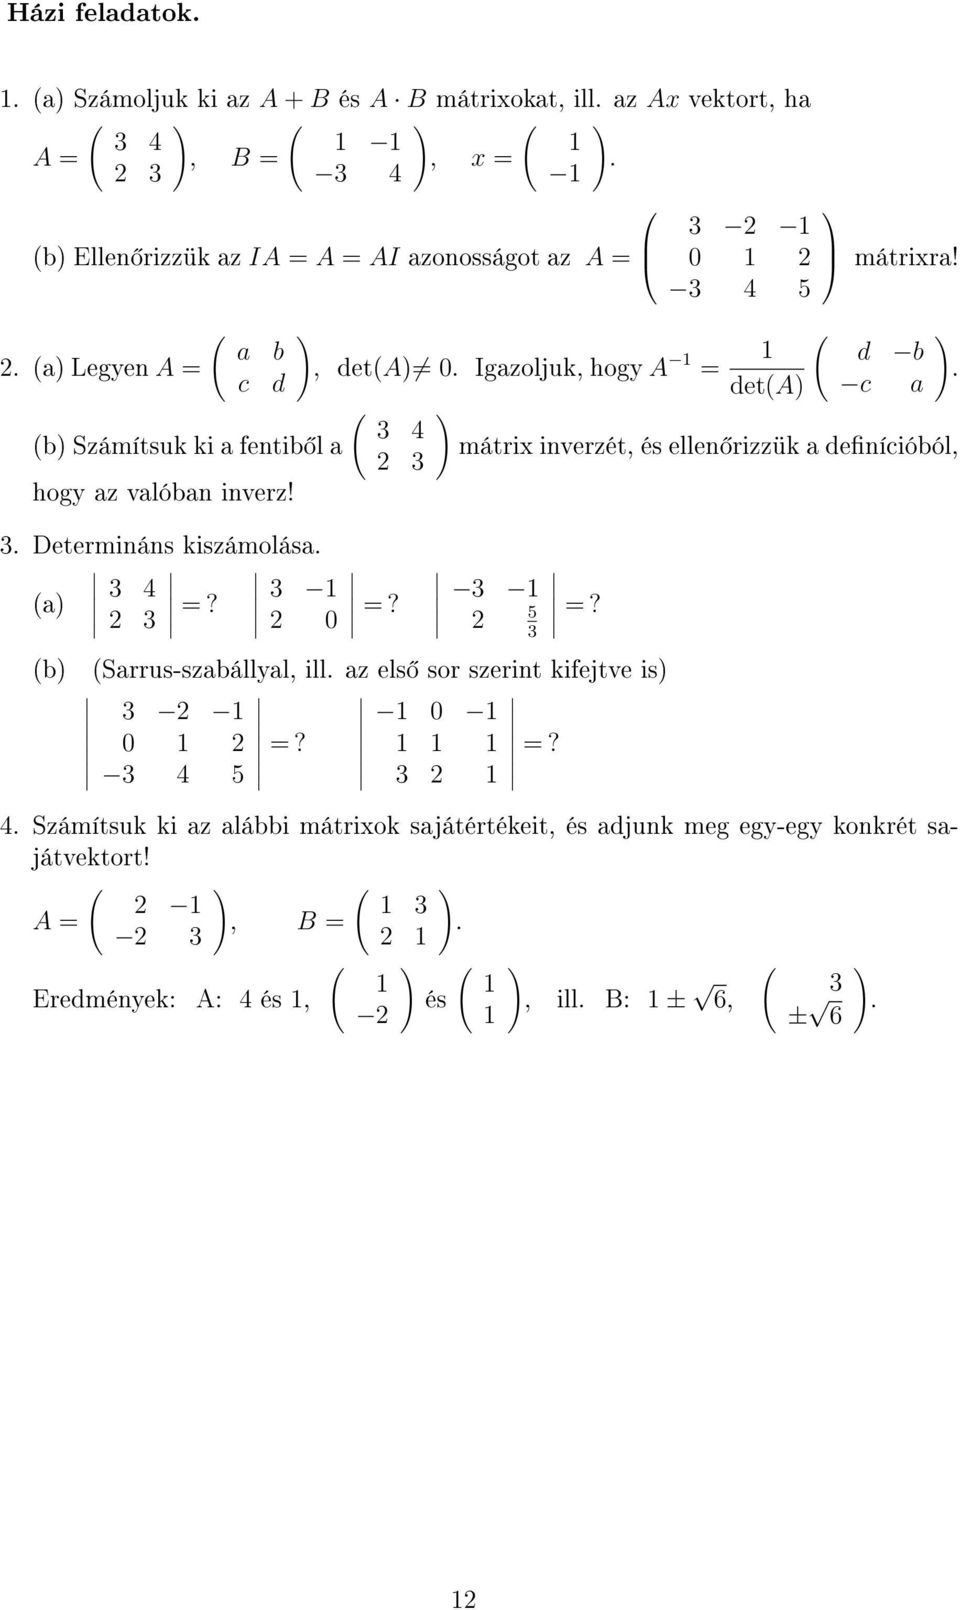 3 Sarrus-szabállyal, ill. az els sor szerint kifejtve is 3 2 0 2 3 4 5 =? 0 3 2 3 2 0 2 3 4 5 deta mátrixra! d b c a mátrix inverzét, és ellen rizzük a denícióból, =?